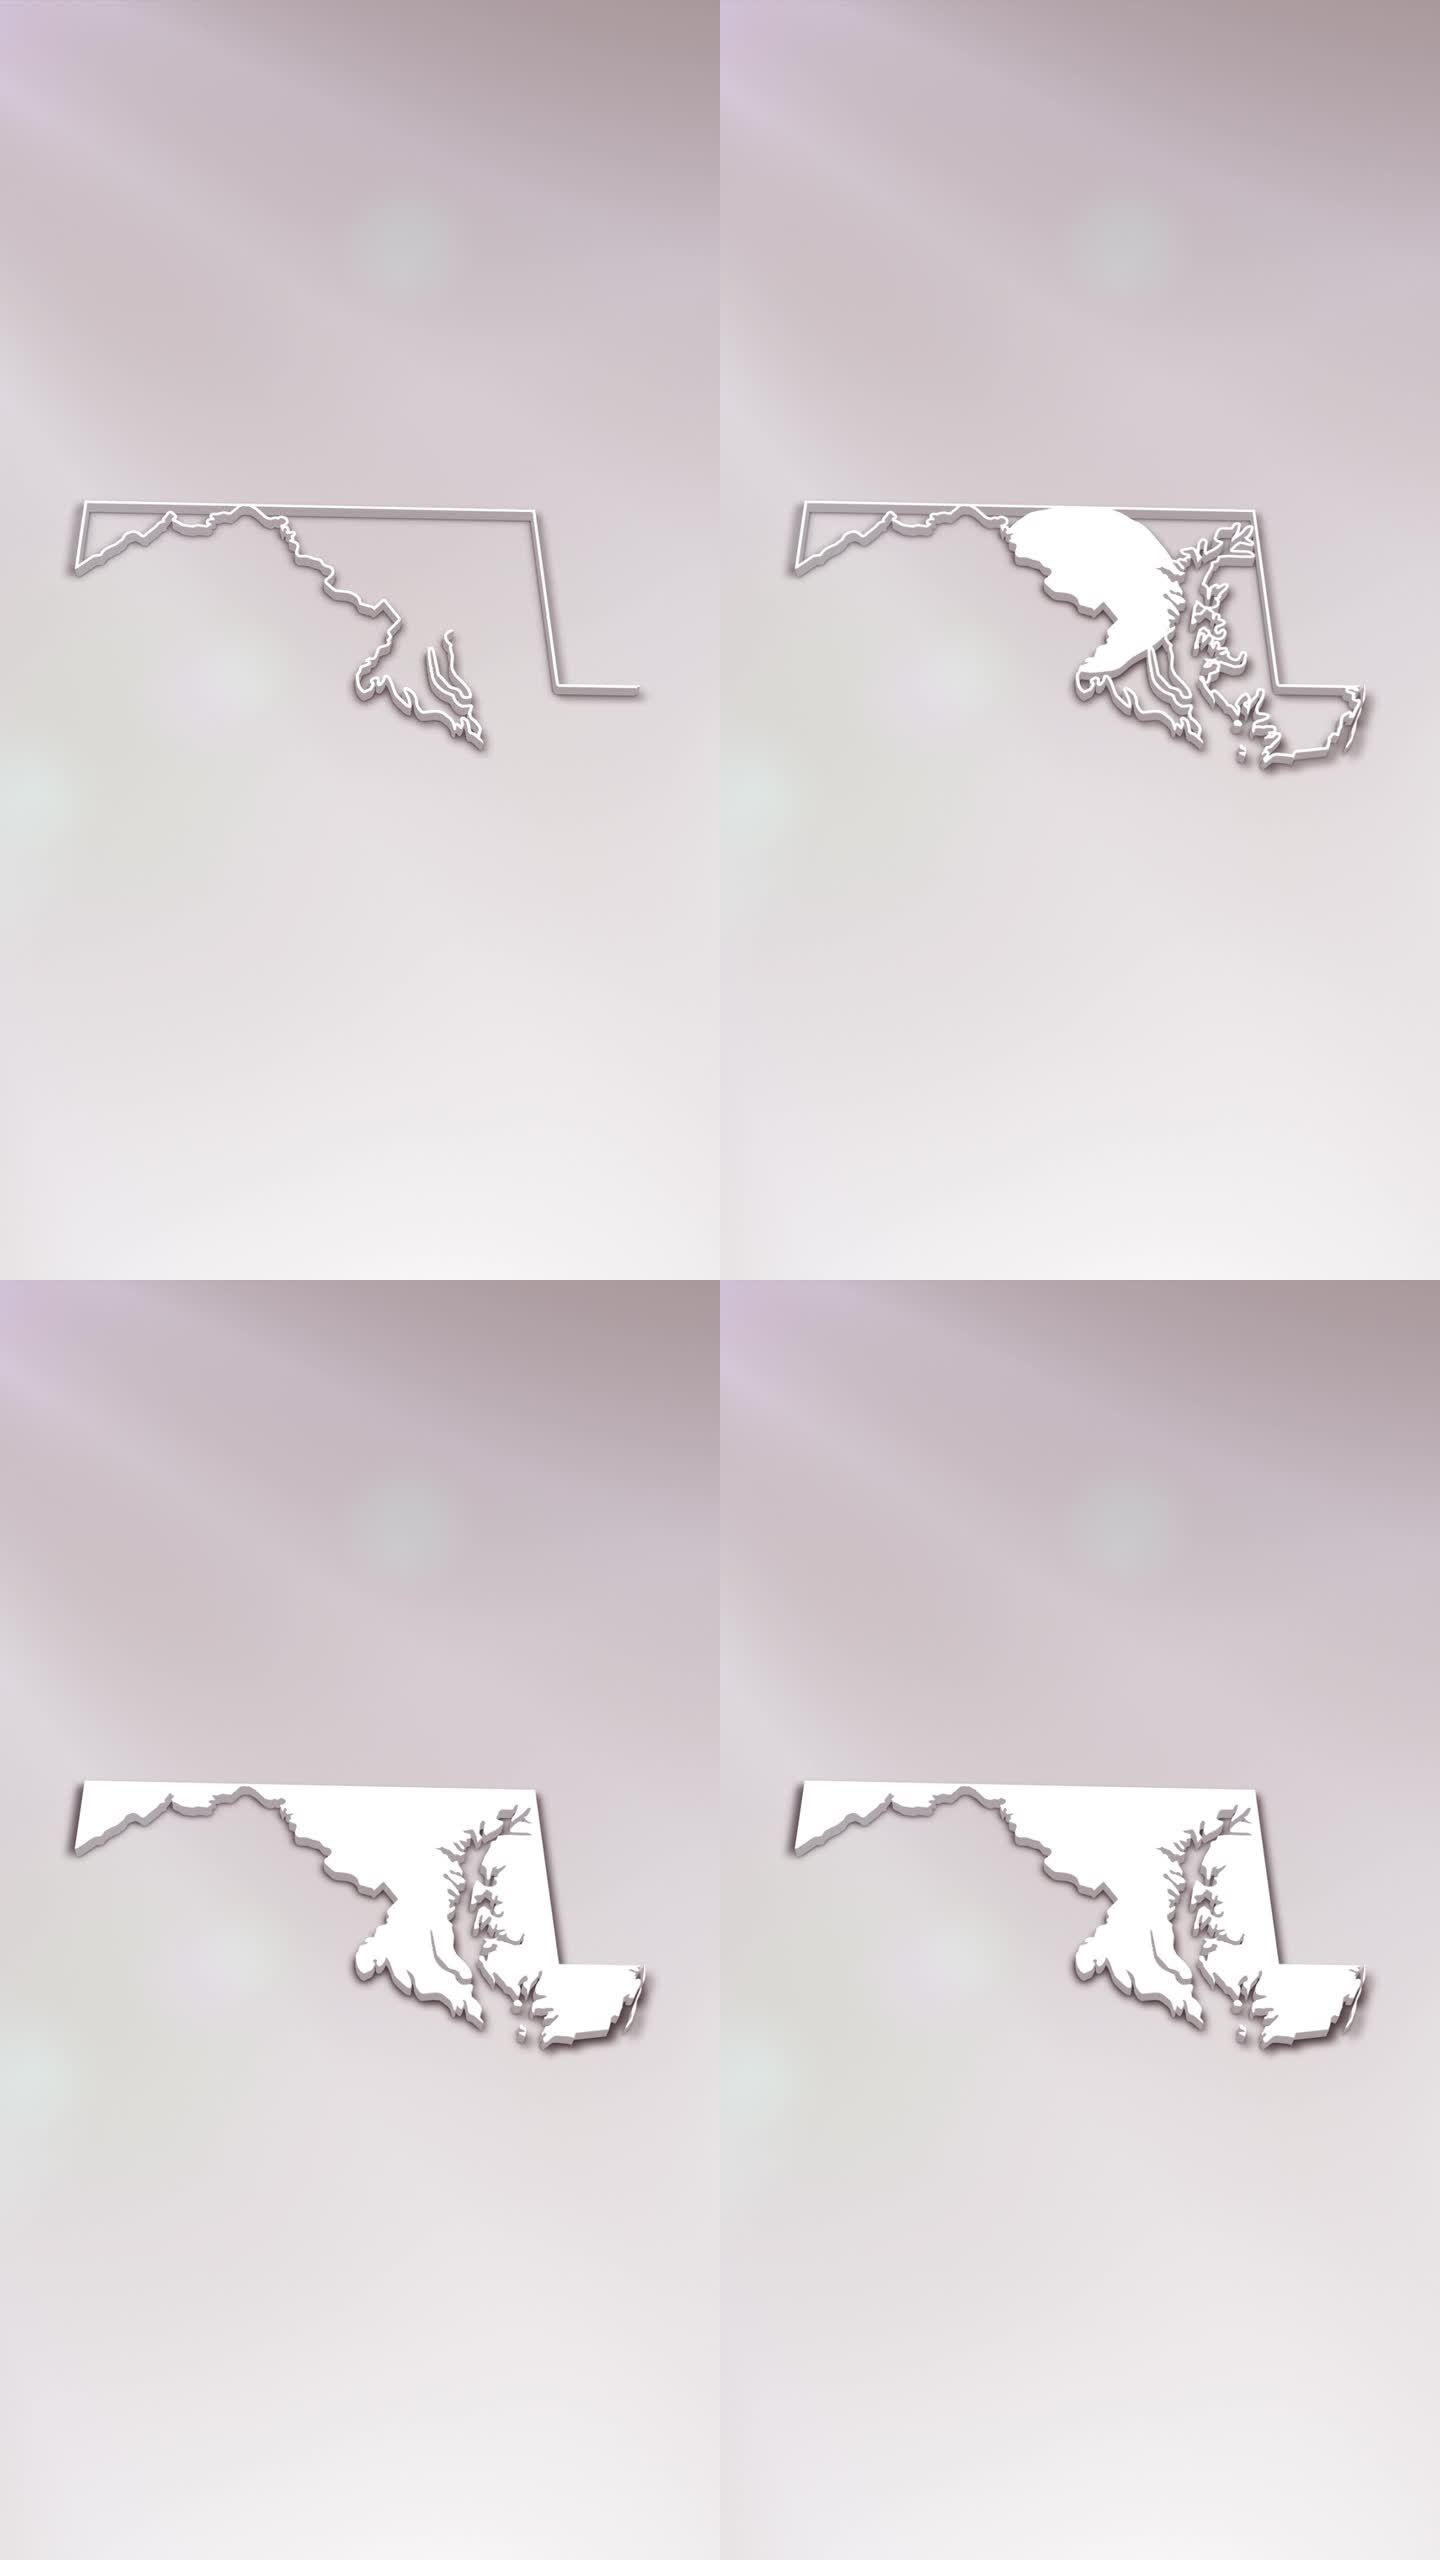 马里兰州3D地图介绍